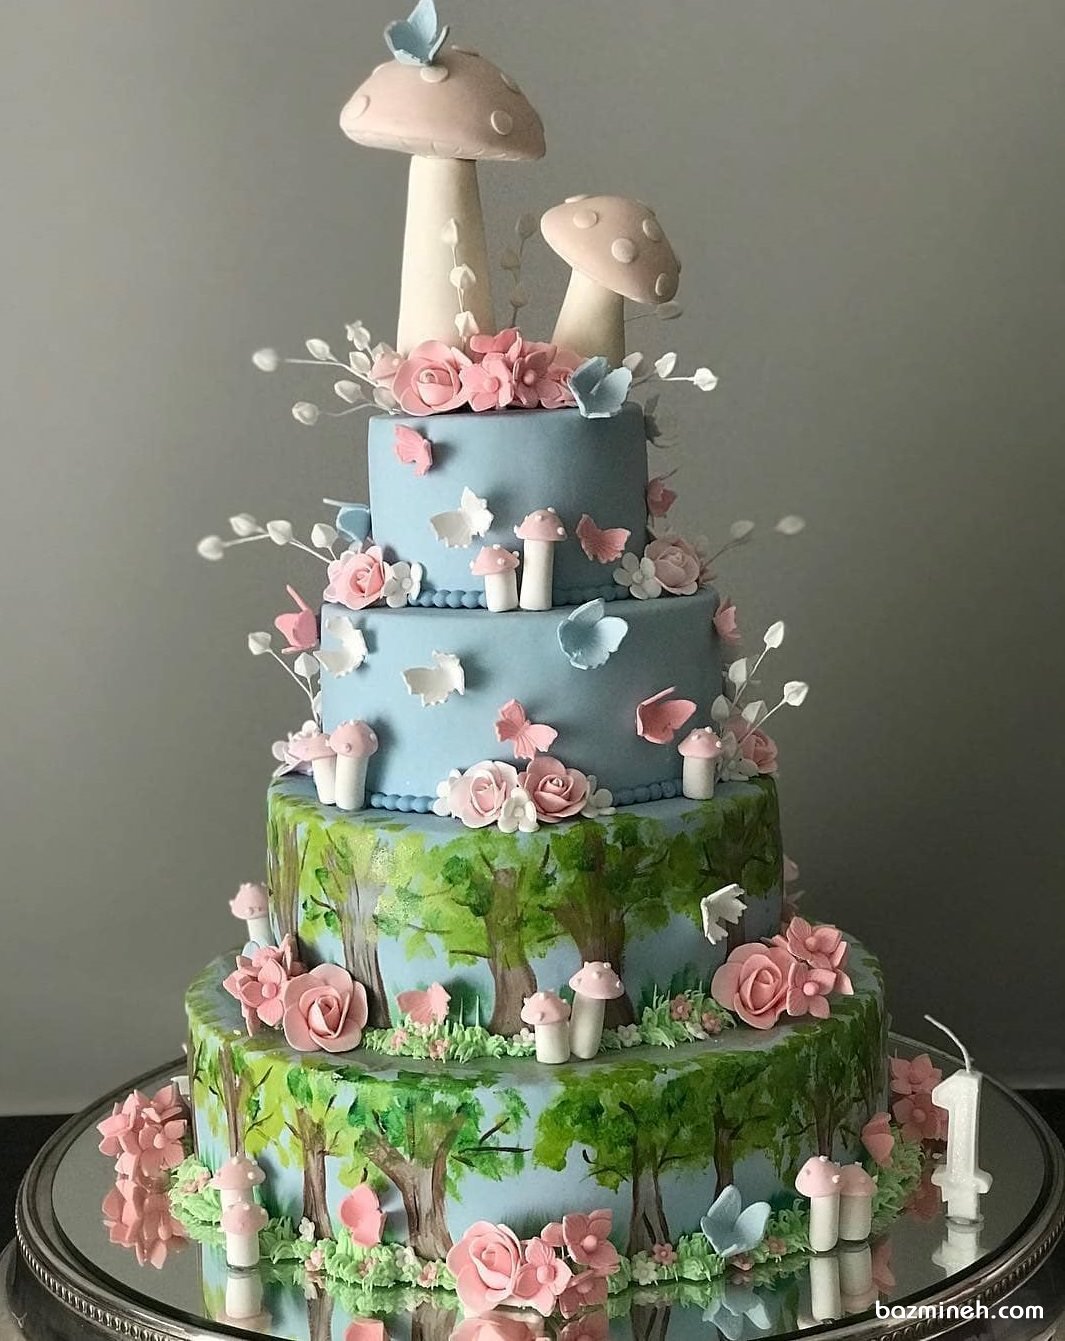 کیک چند طبقه جشن تولد کودک با تم جنگل تزیین شده با قارچ و شکوفه های صورتی 